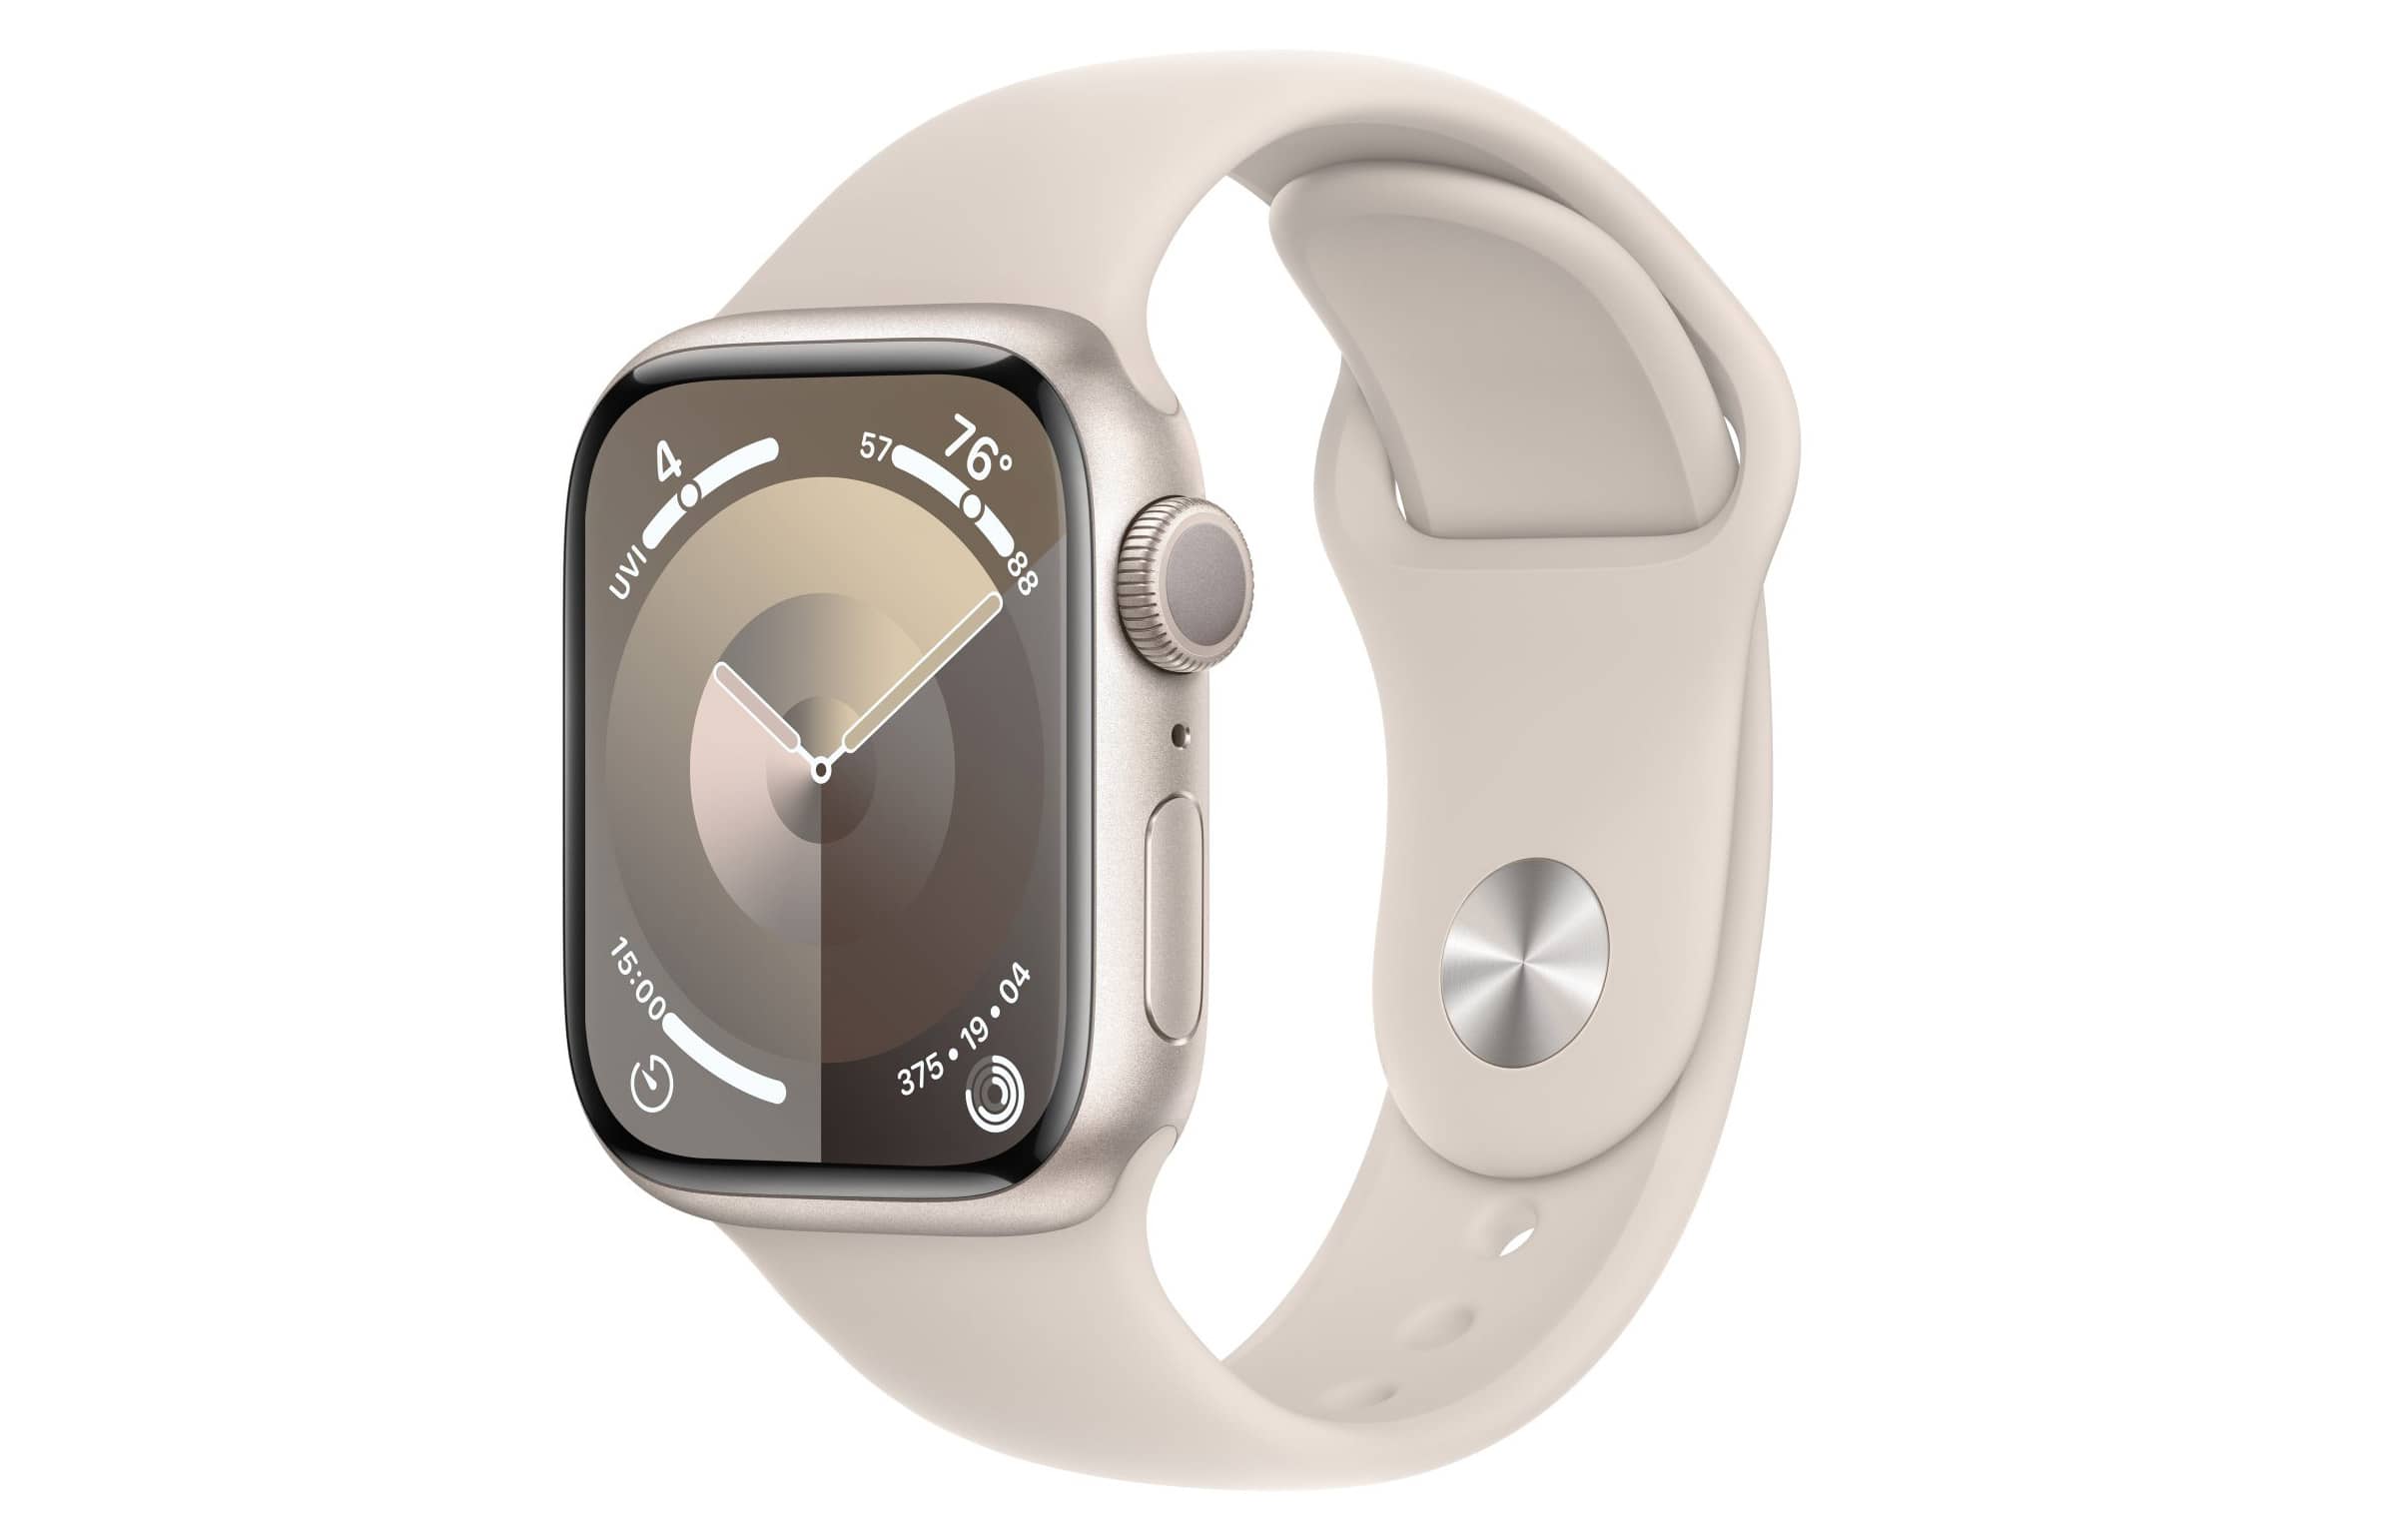 Apple Watch Series 1 добавлены с список винтажных продуктов Apple